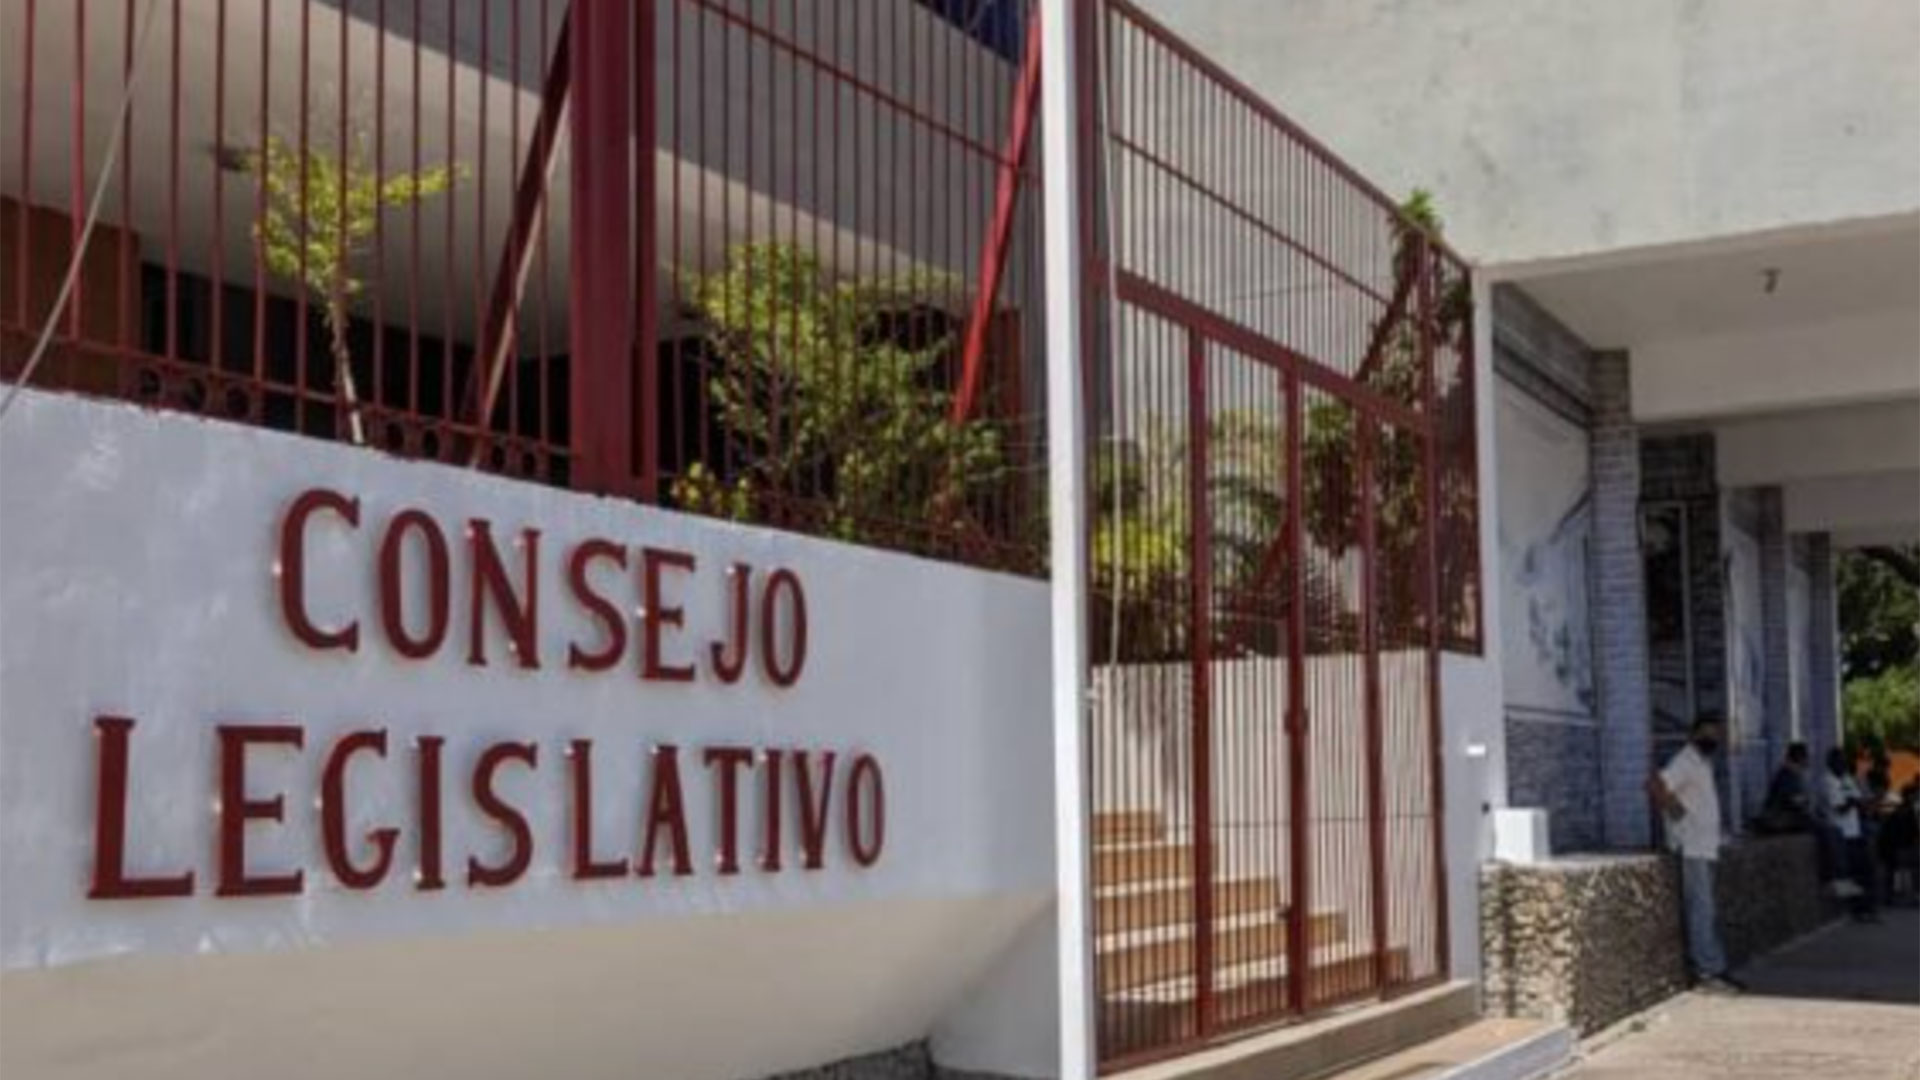 El chavismo pidió acuerdos regionales contra la corrupción: un diputado opositor propuso investigar las obras inconclusas en Falcón